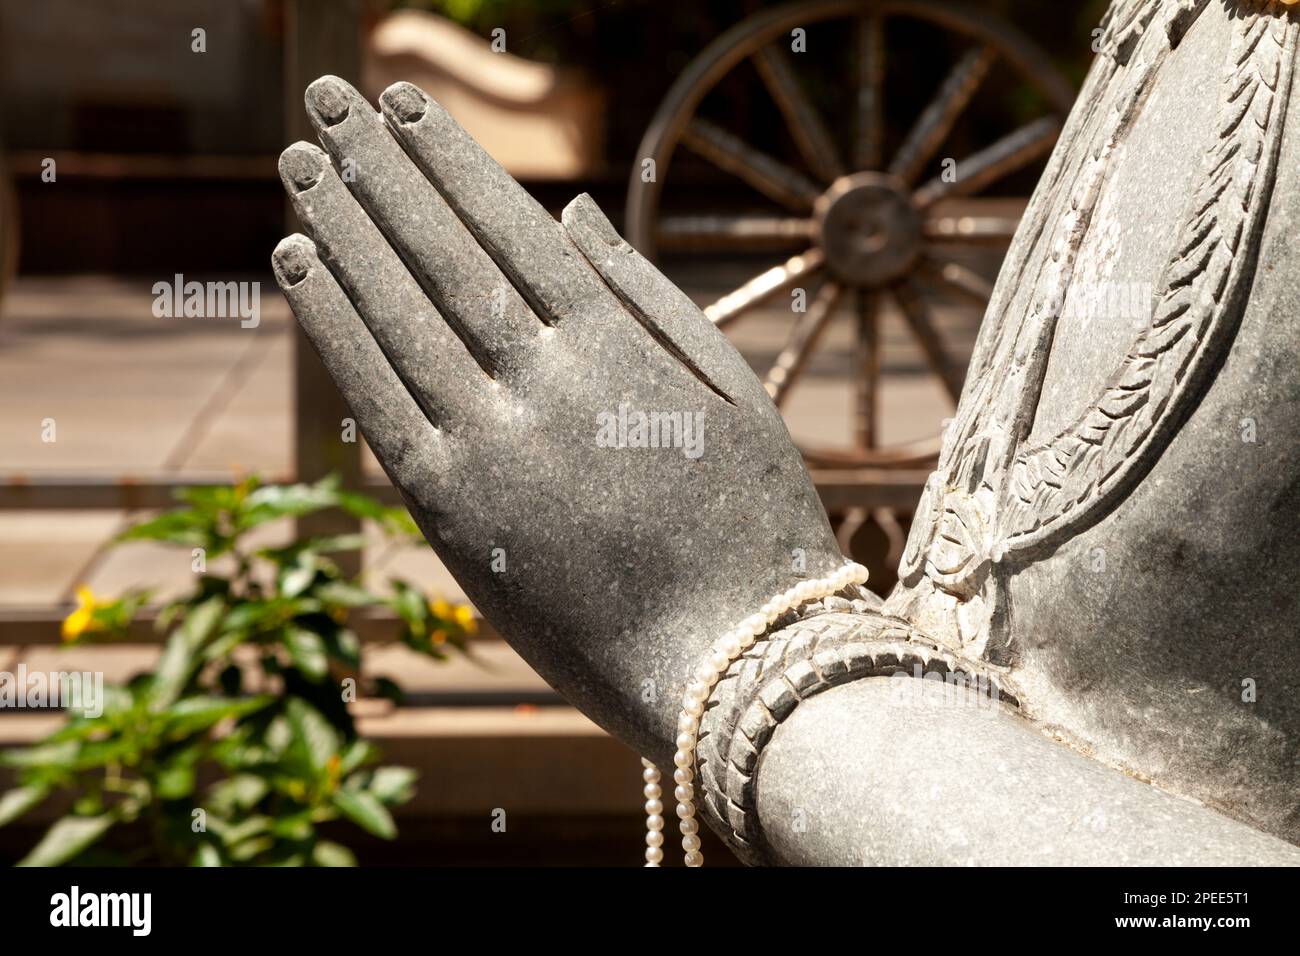 Geschnitzte Steinstatue Hände aus nächster Nähe in einem buddhistischen Tempel mit dem Rad des Lebens im Hintergrund. Religiöse Skulpturen, eine Person, die eine Mudra macht Stockfoto